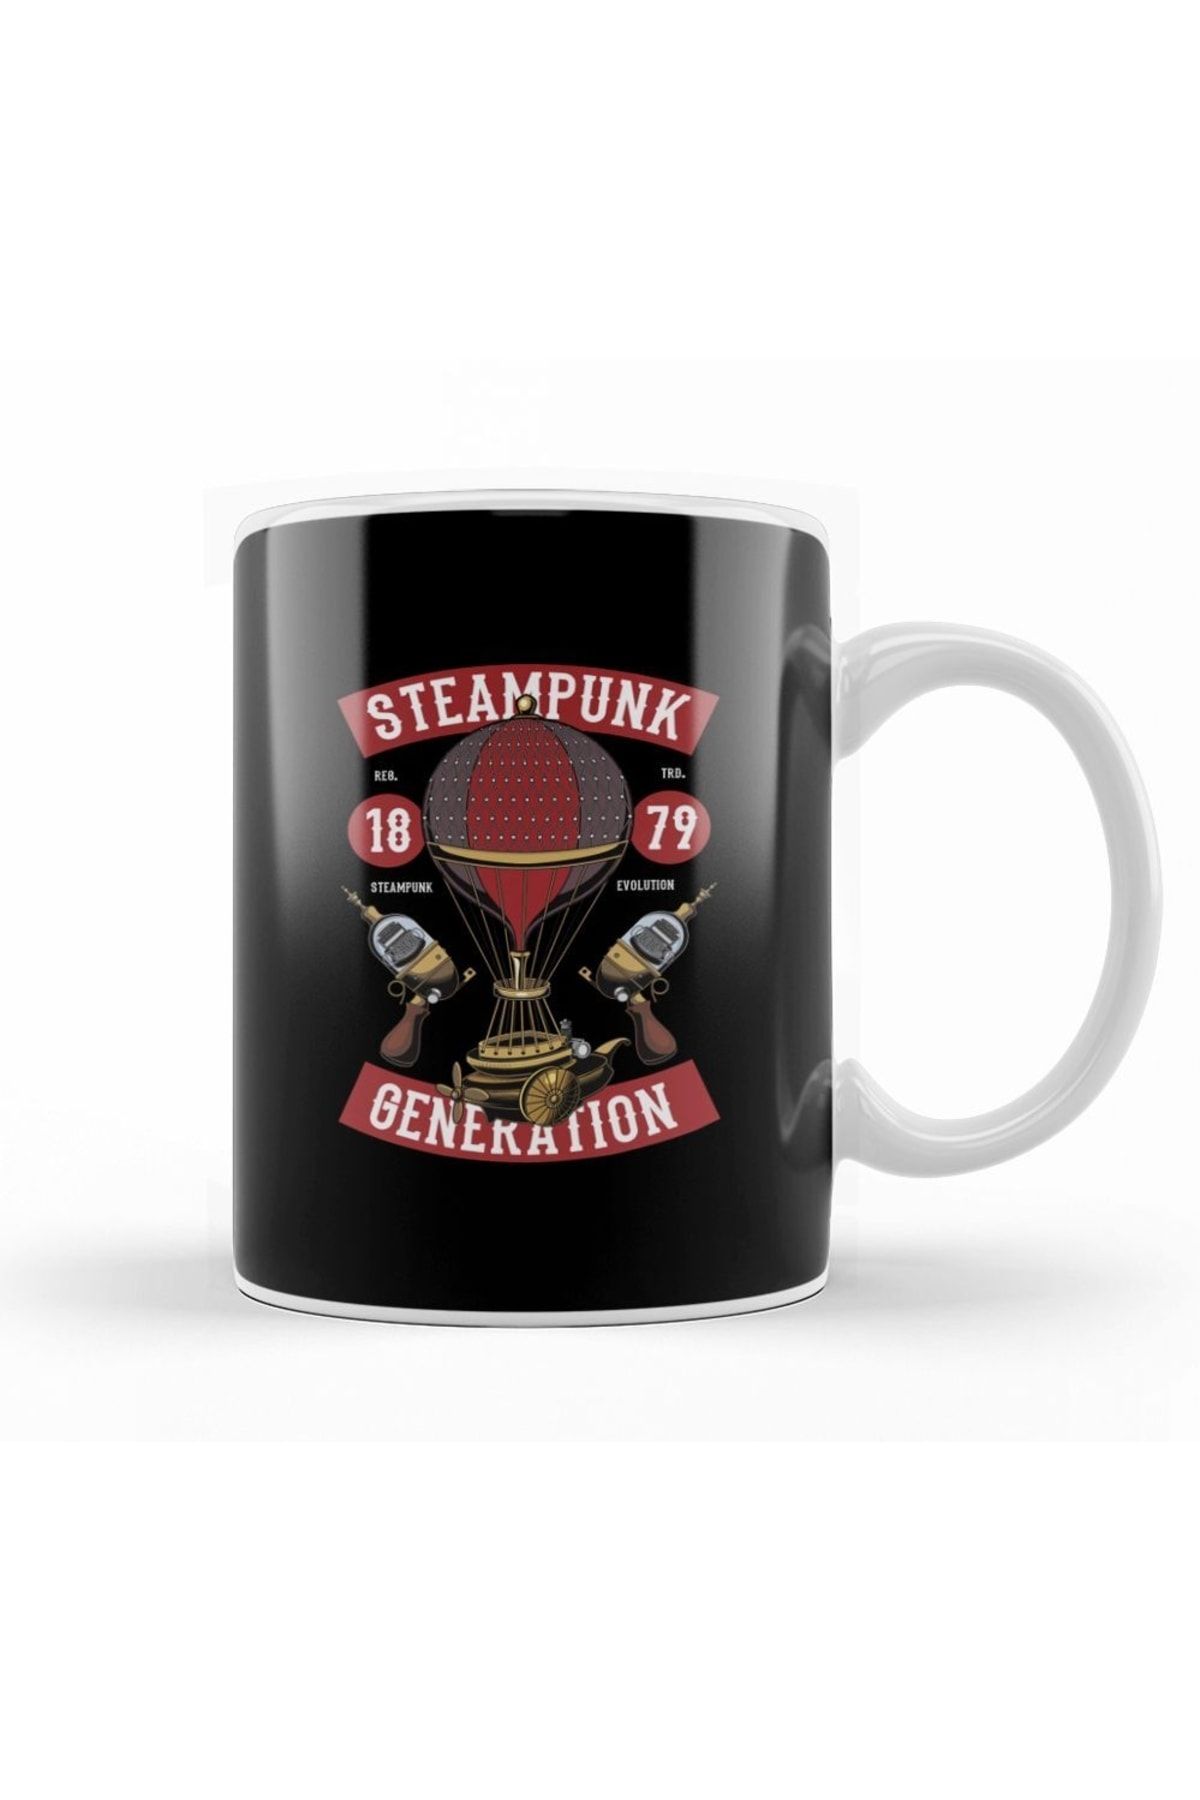 Humuts Steampunk Generation Kupa Bardak Porselen